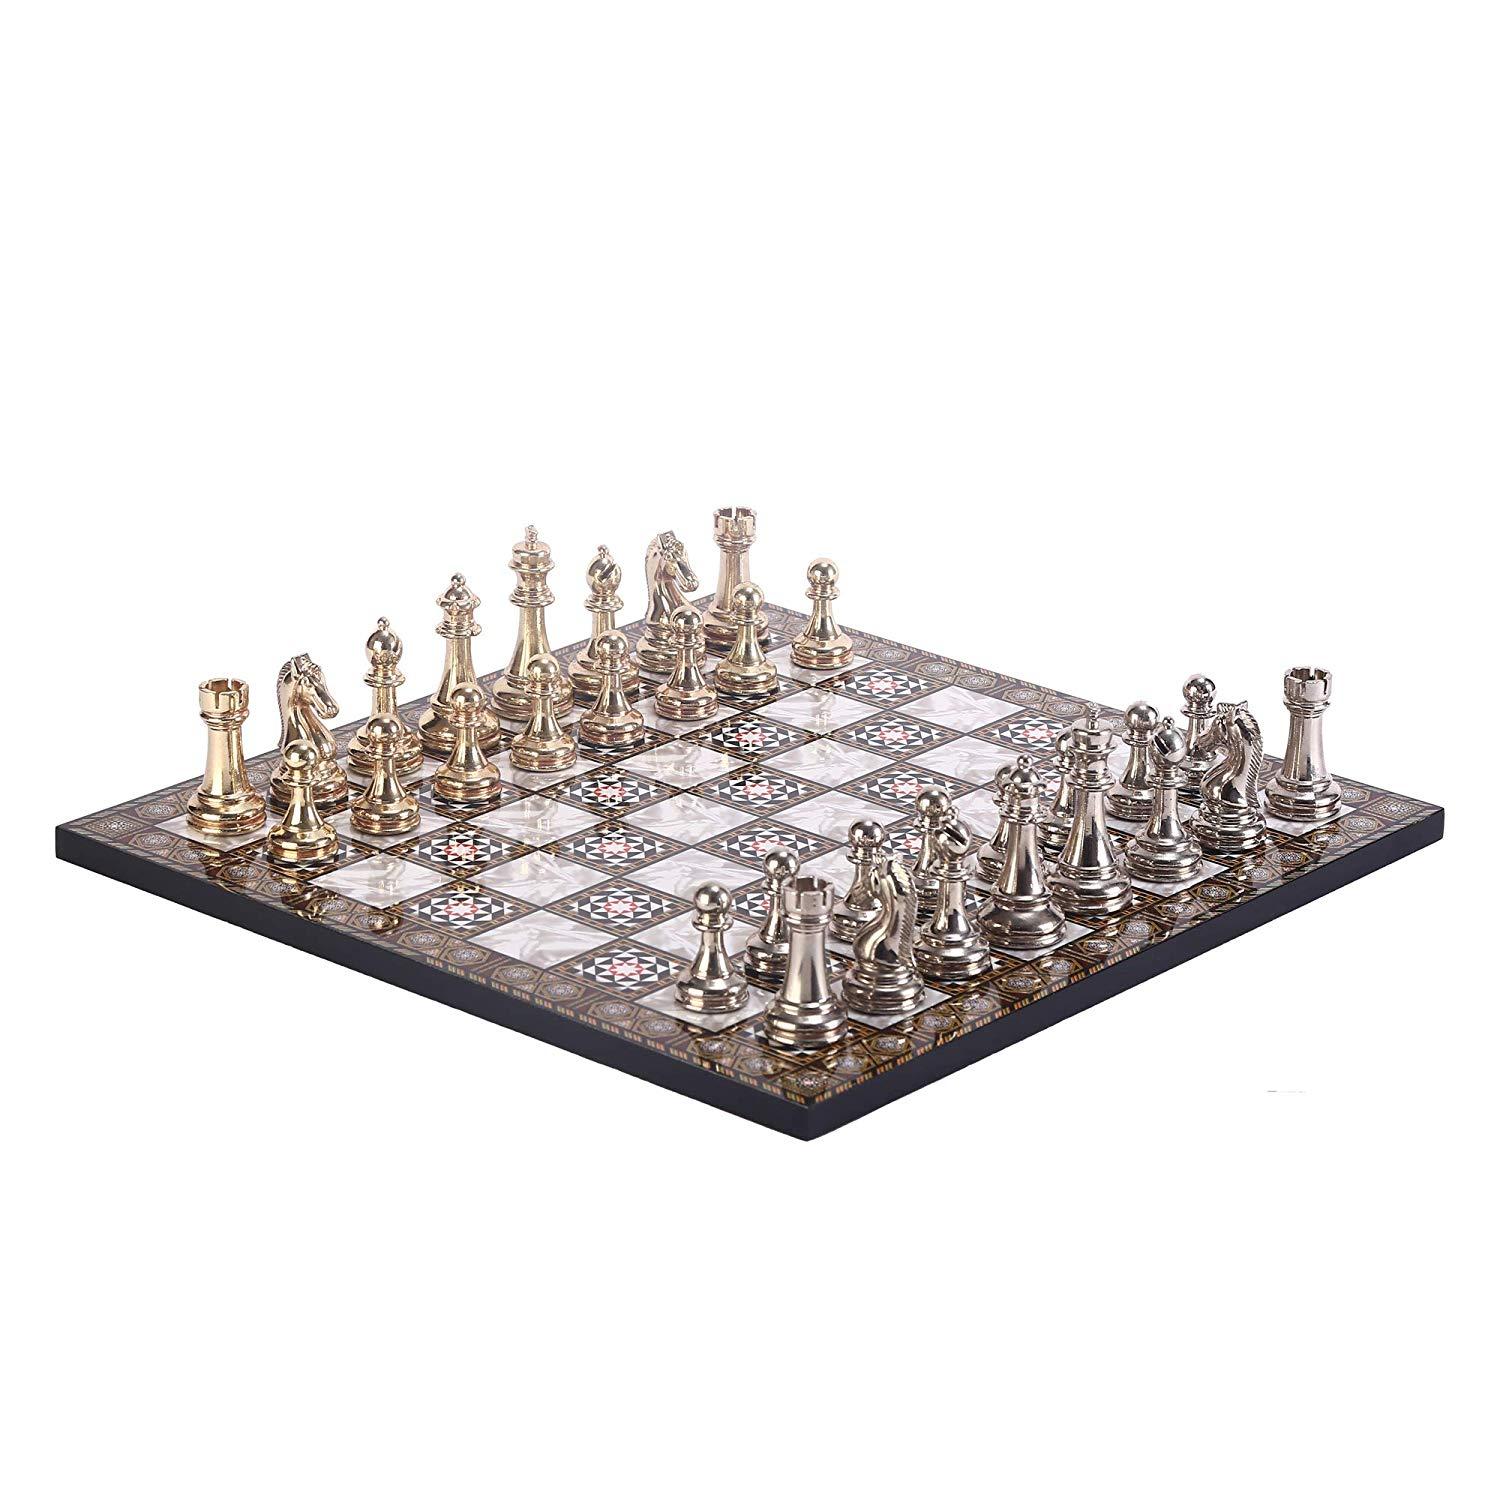 Изображение товара: Классический Шахматный набор для взрослых, шахматные доски ручной работы с жемчугом мамы, 7 см